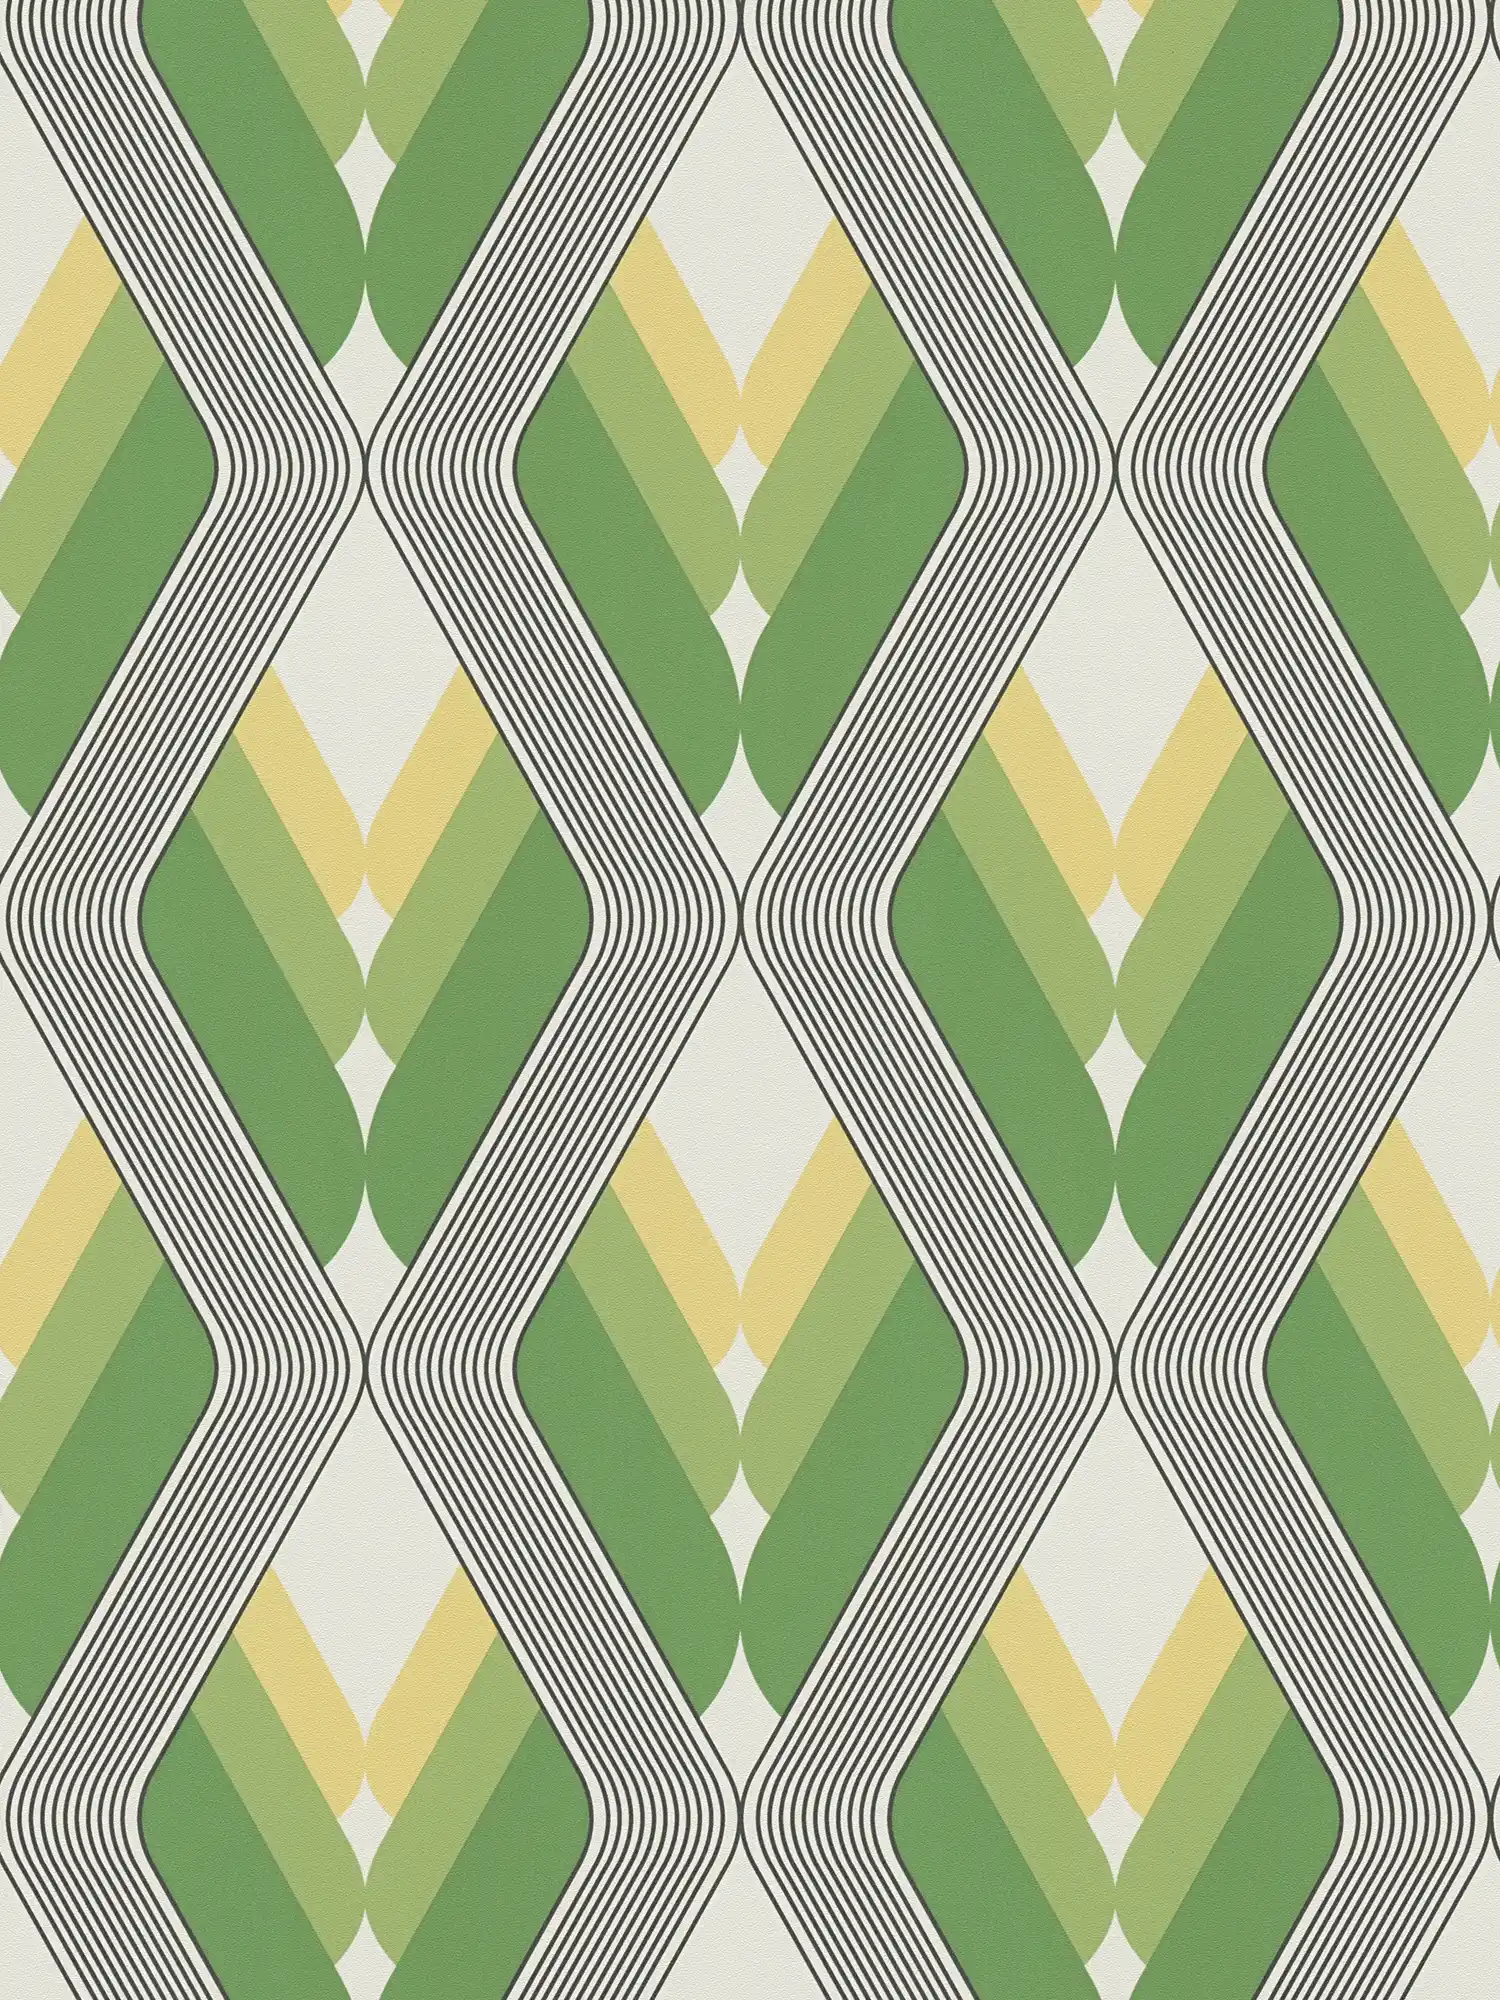         Grafiktapete 70er Design – Grün, Weiß, Schwarz
    